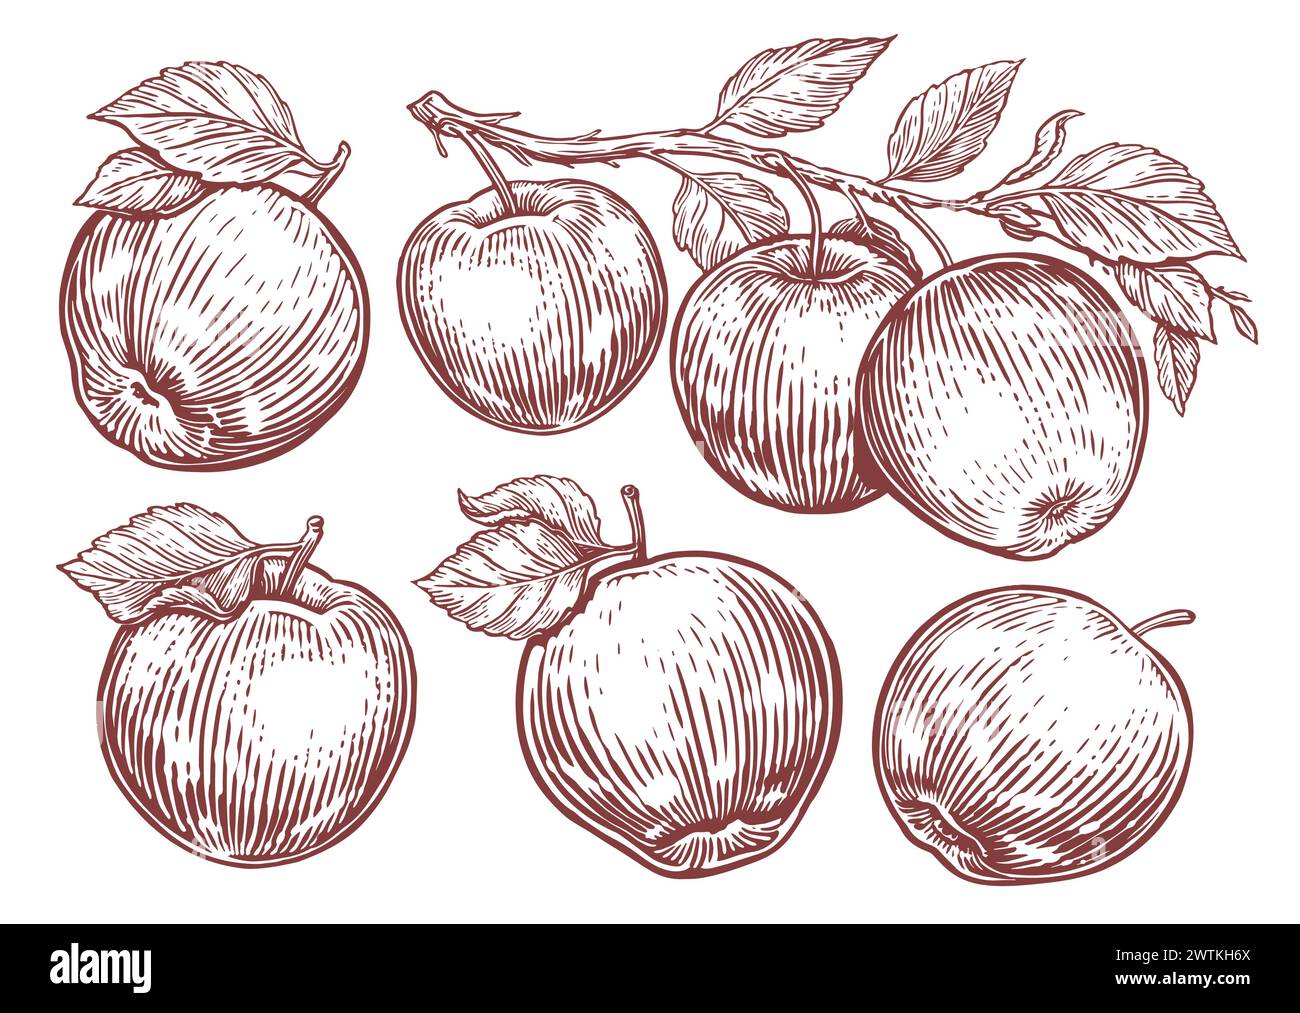 Apfelset. Apfelfrucht, Zweig mit Blättern. Hand gezeichnete Skizze Gravur Stil Vektor Illustration Stock Vektor